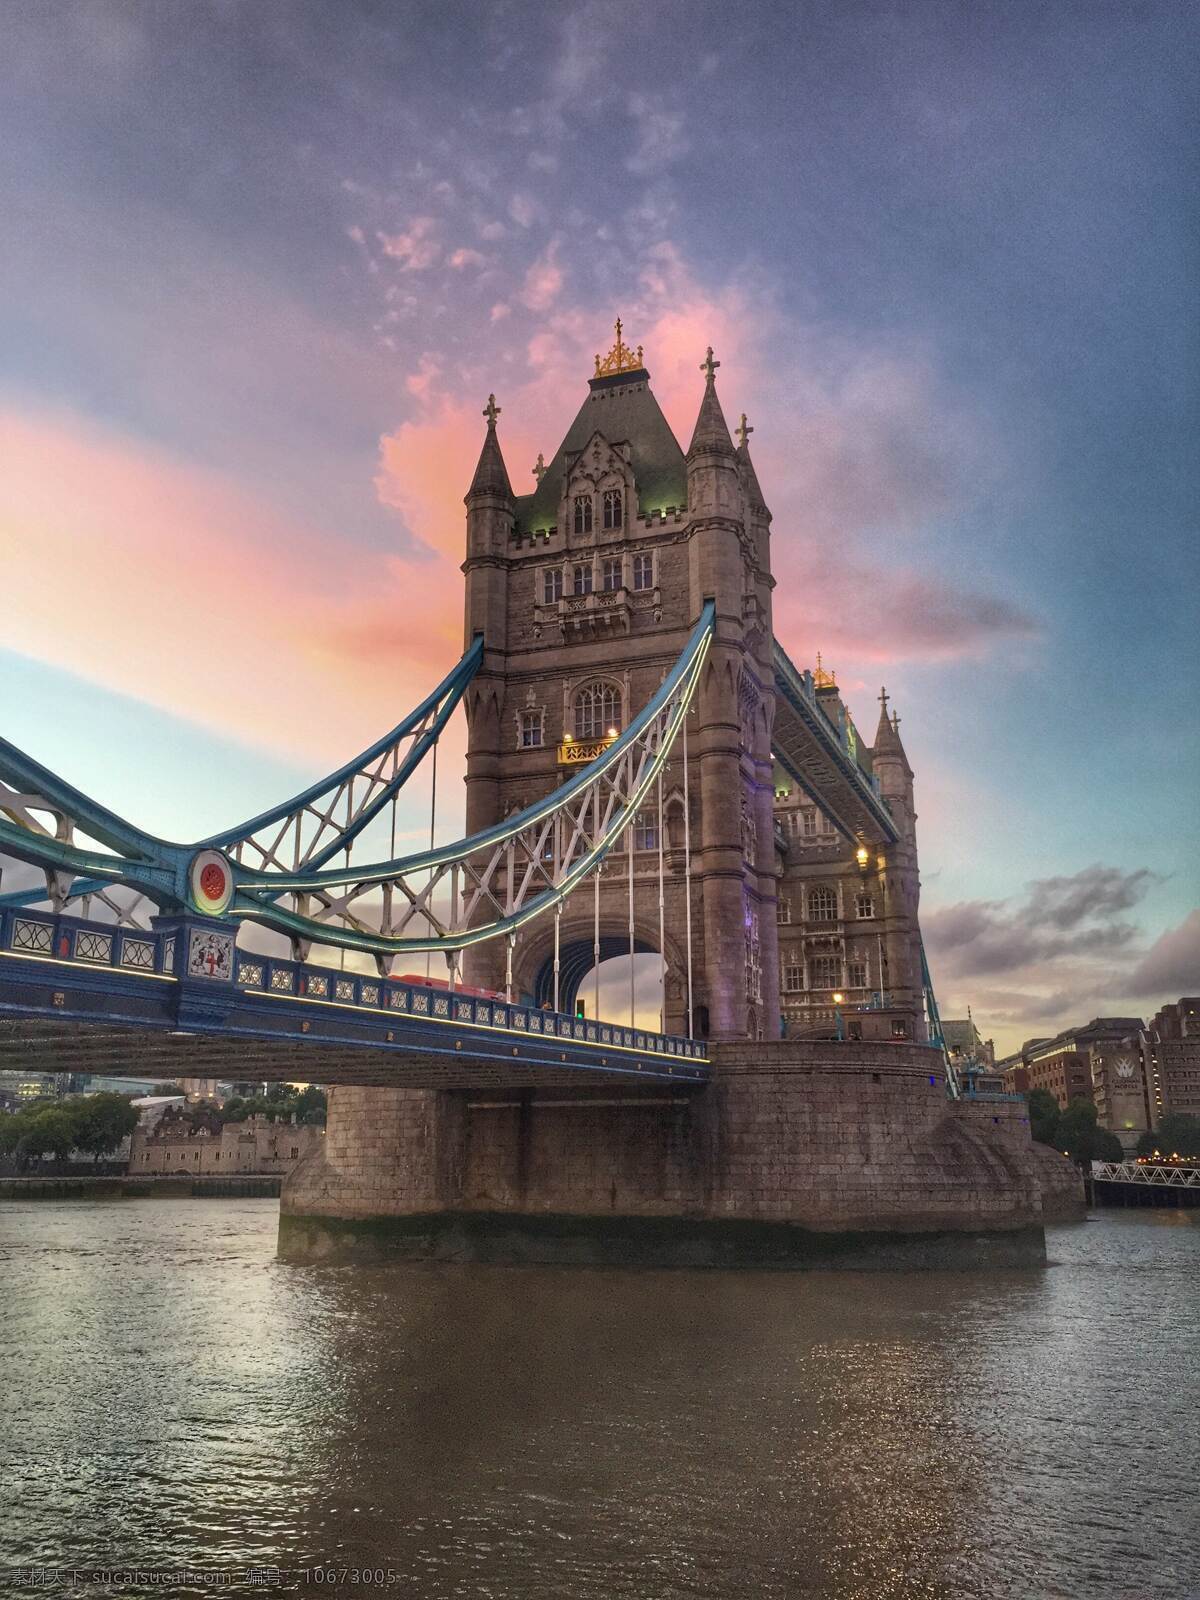 伦敦塔桥图片 英国 英国伦敦 伦敦塔桥 泰晤士河 塔桥 国外美丽风光